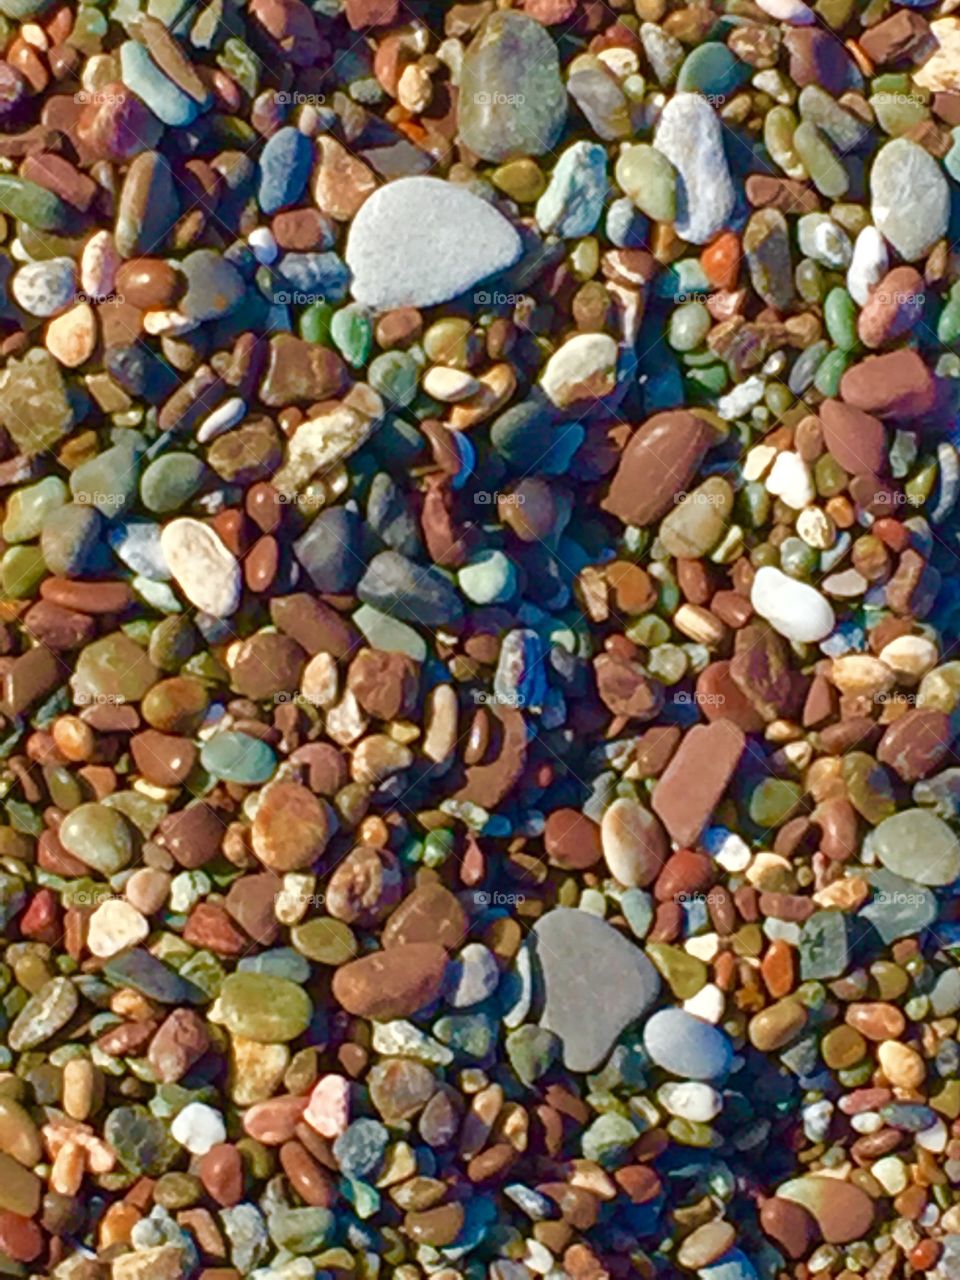 Moonstone Beach - Stones 2